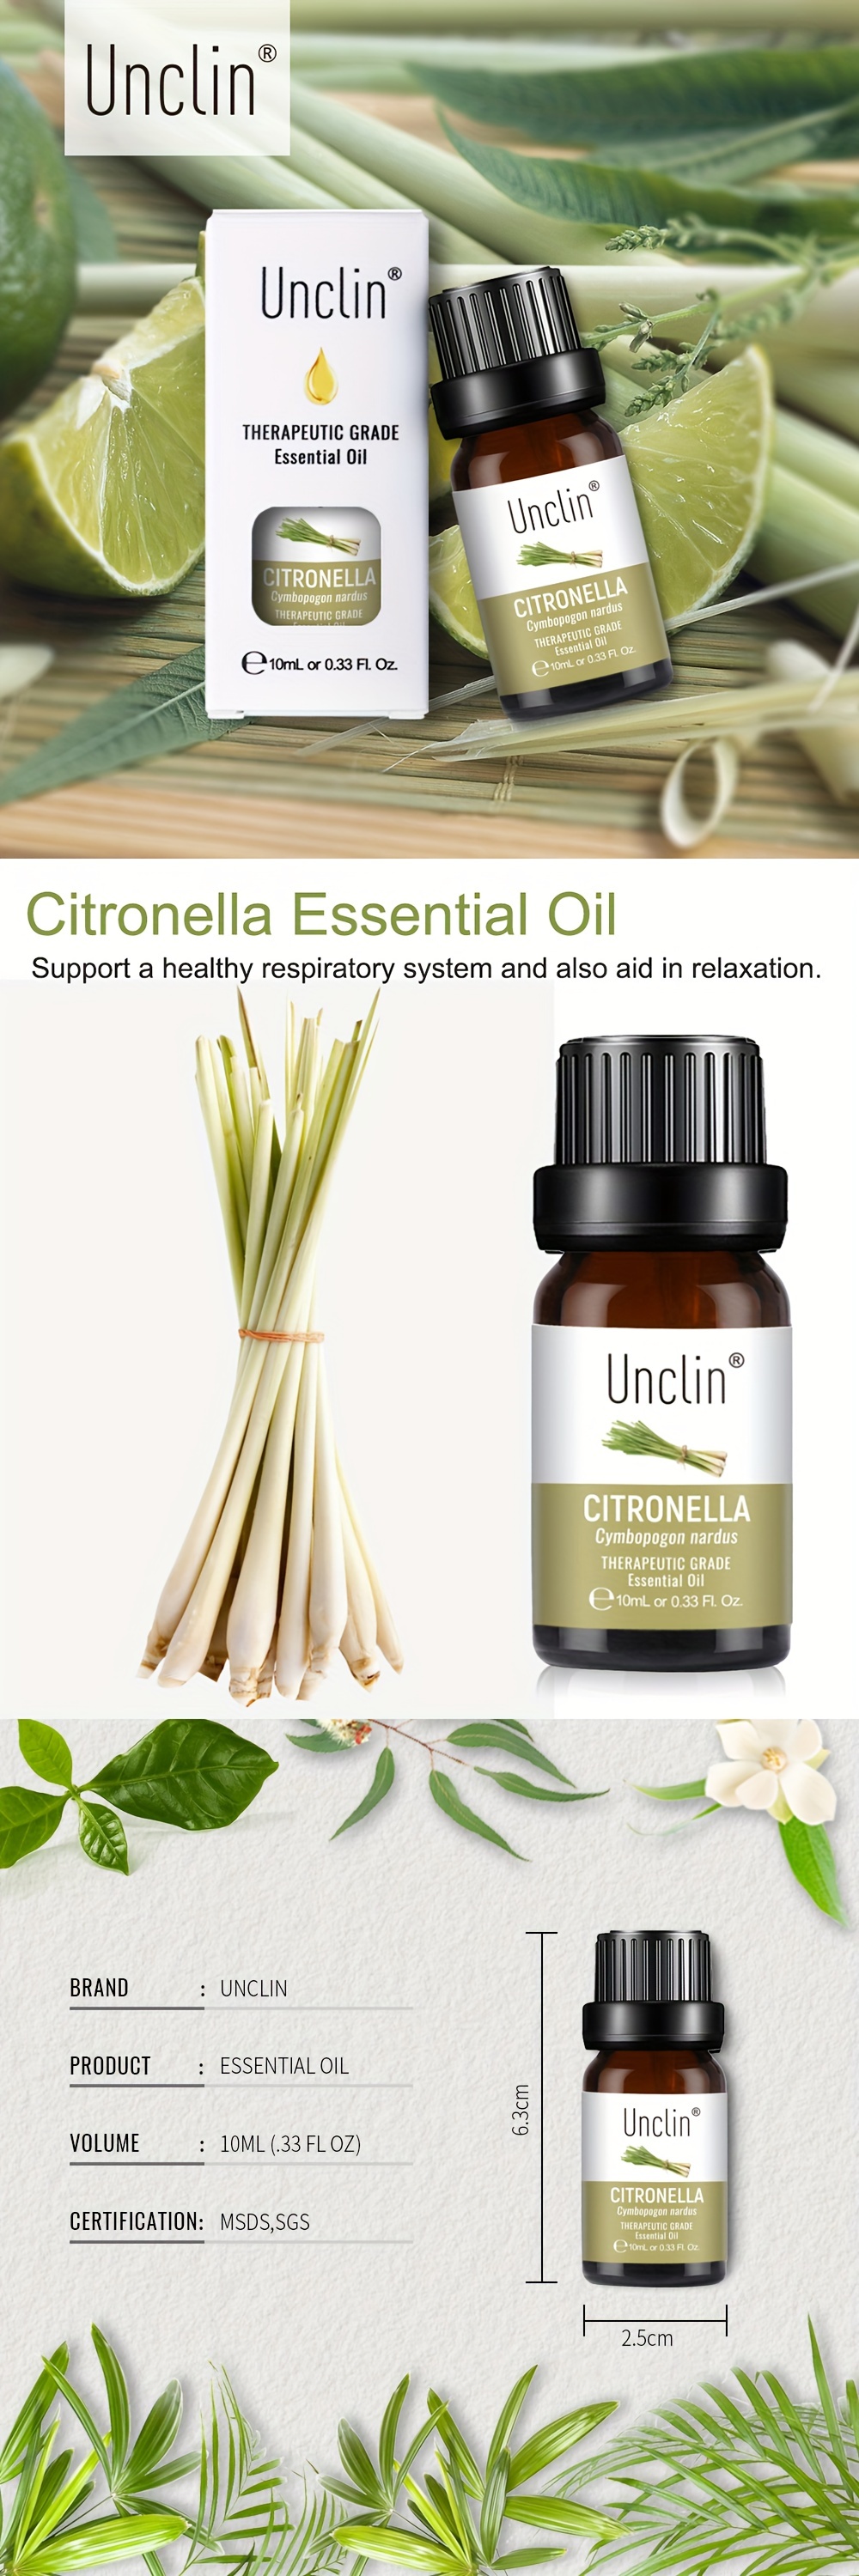 citronella plant oil